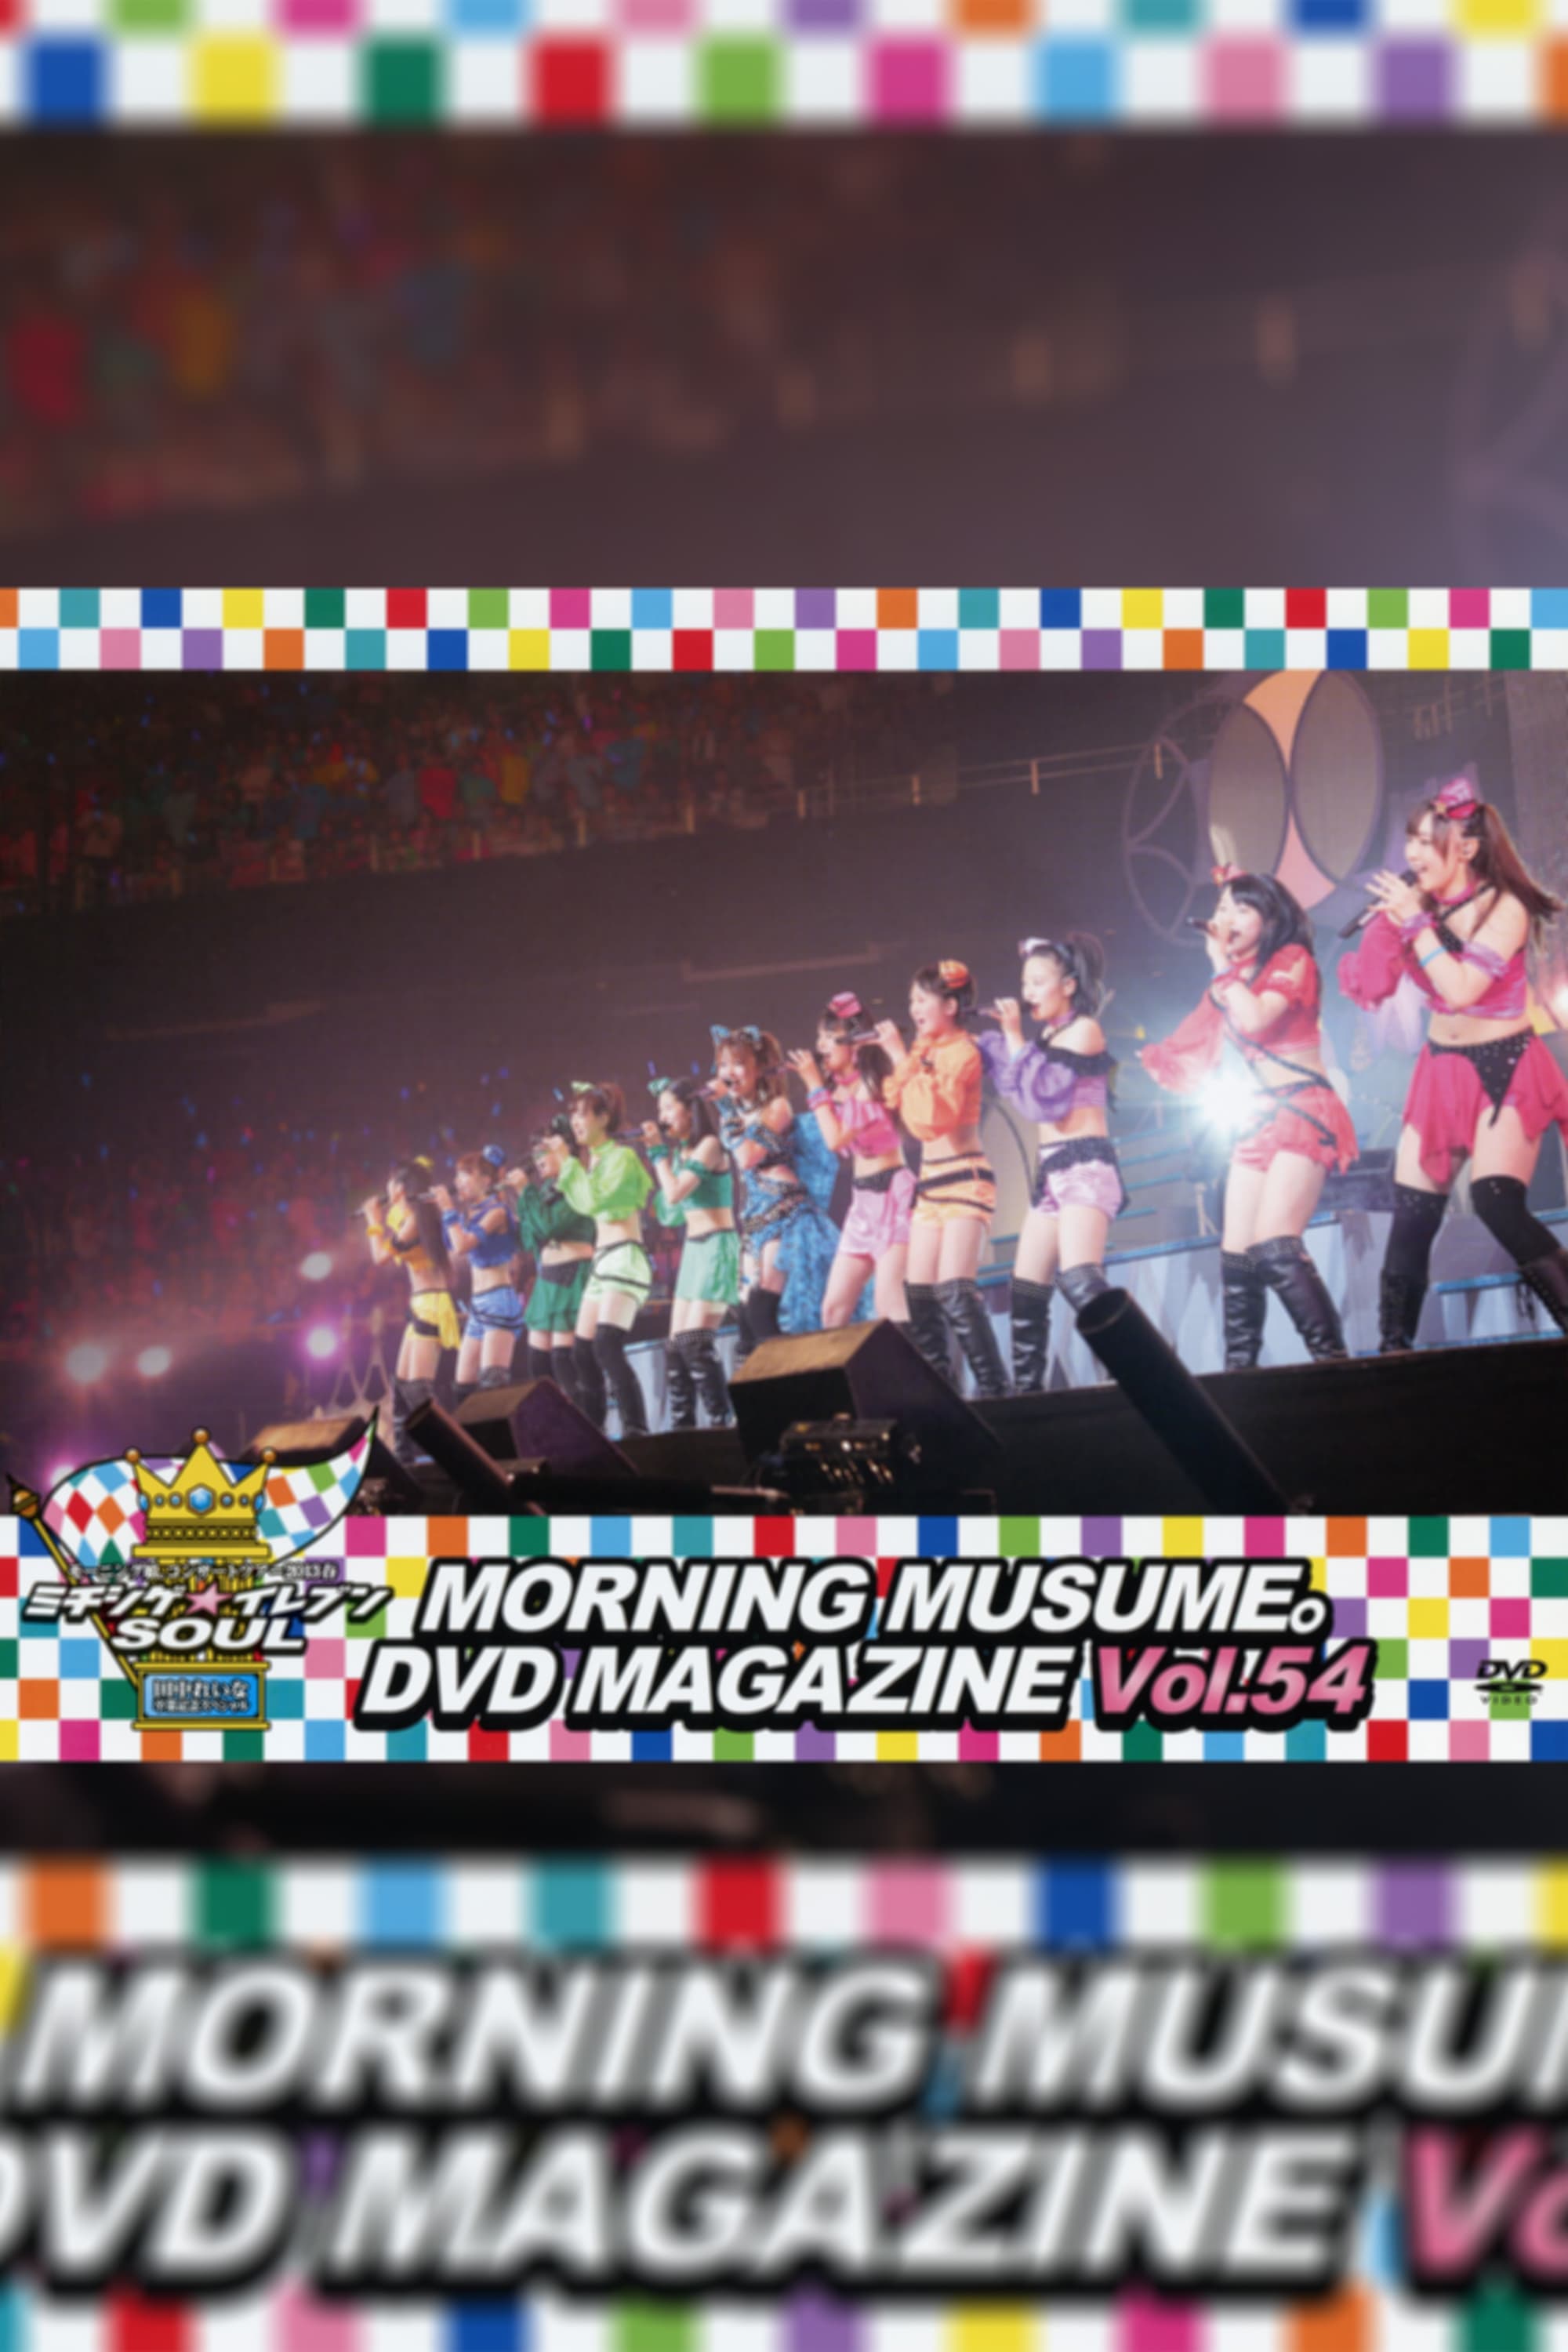 Morning Musume. DVD Magazine Vol.54